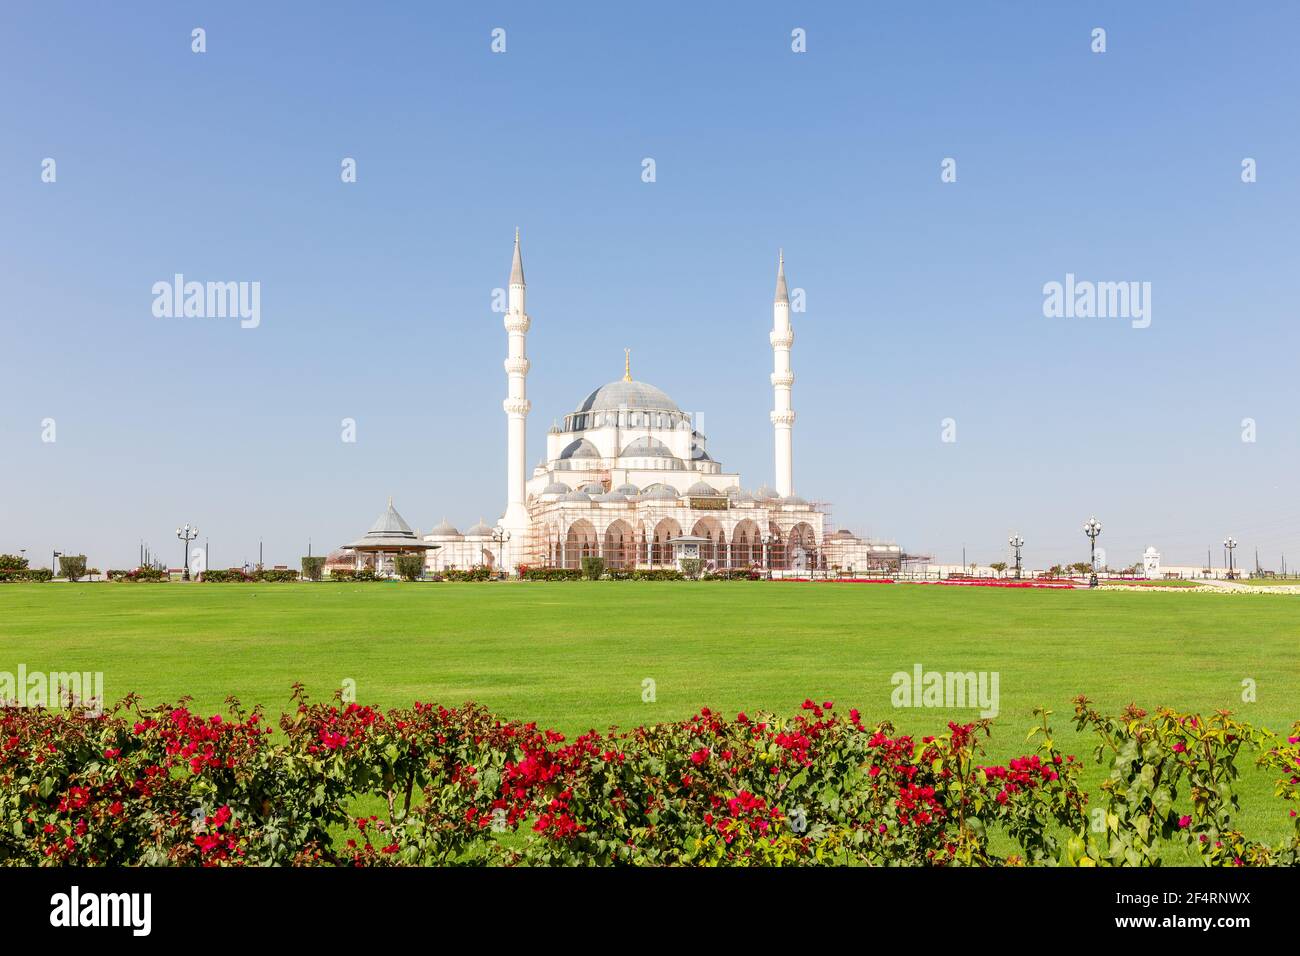 Nuova Moschea Sharjah (Sharjah Masjid), la più grande moschea dell'Emirato di Sharjah, gli Emirati Arabi Uniti, facciata in arenaria bianca con cupole. Foto Stock